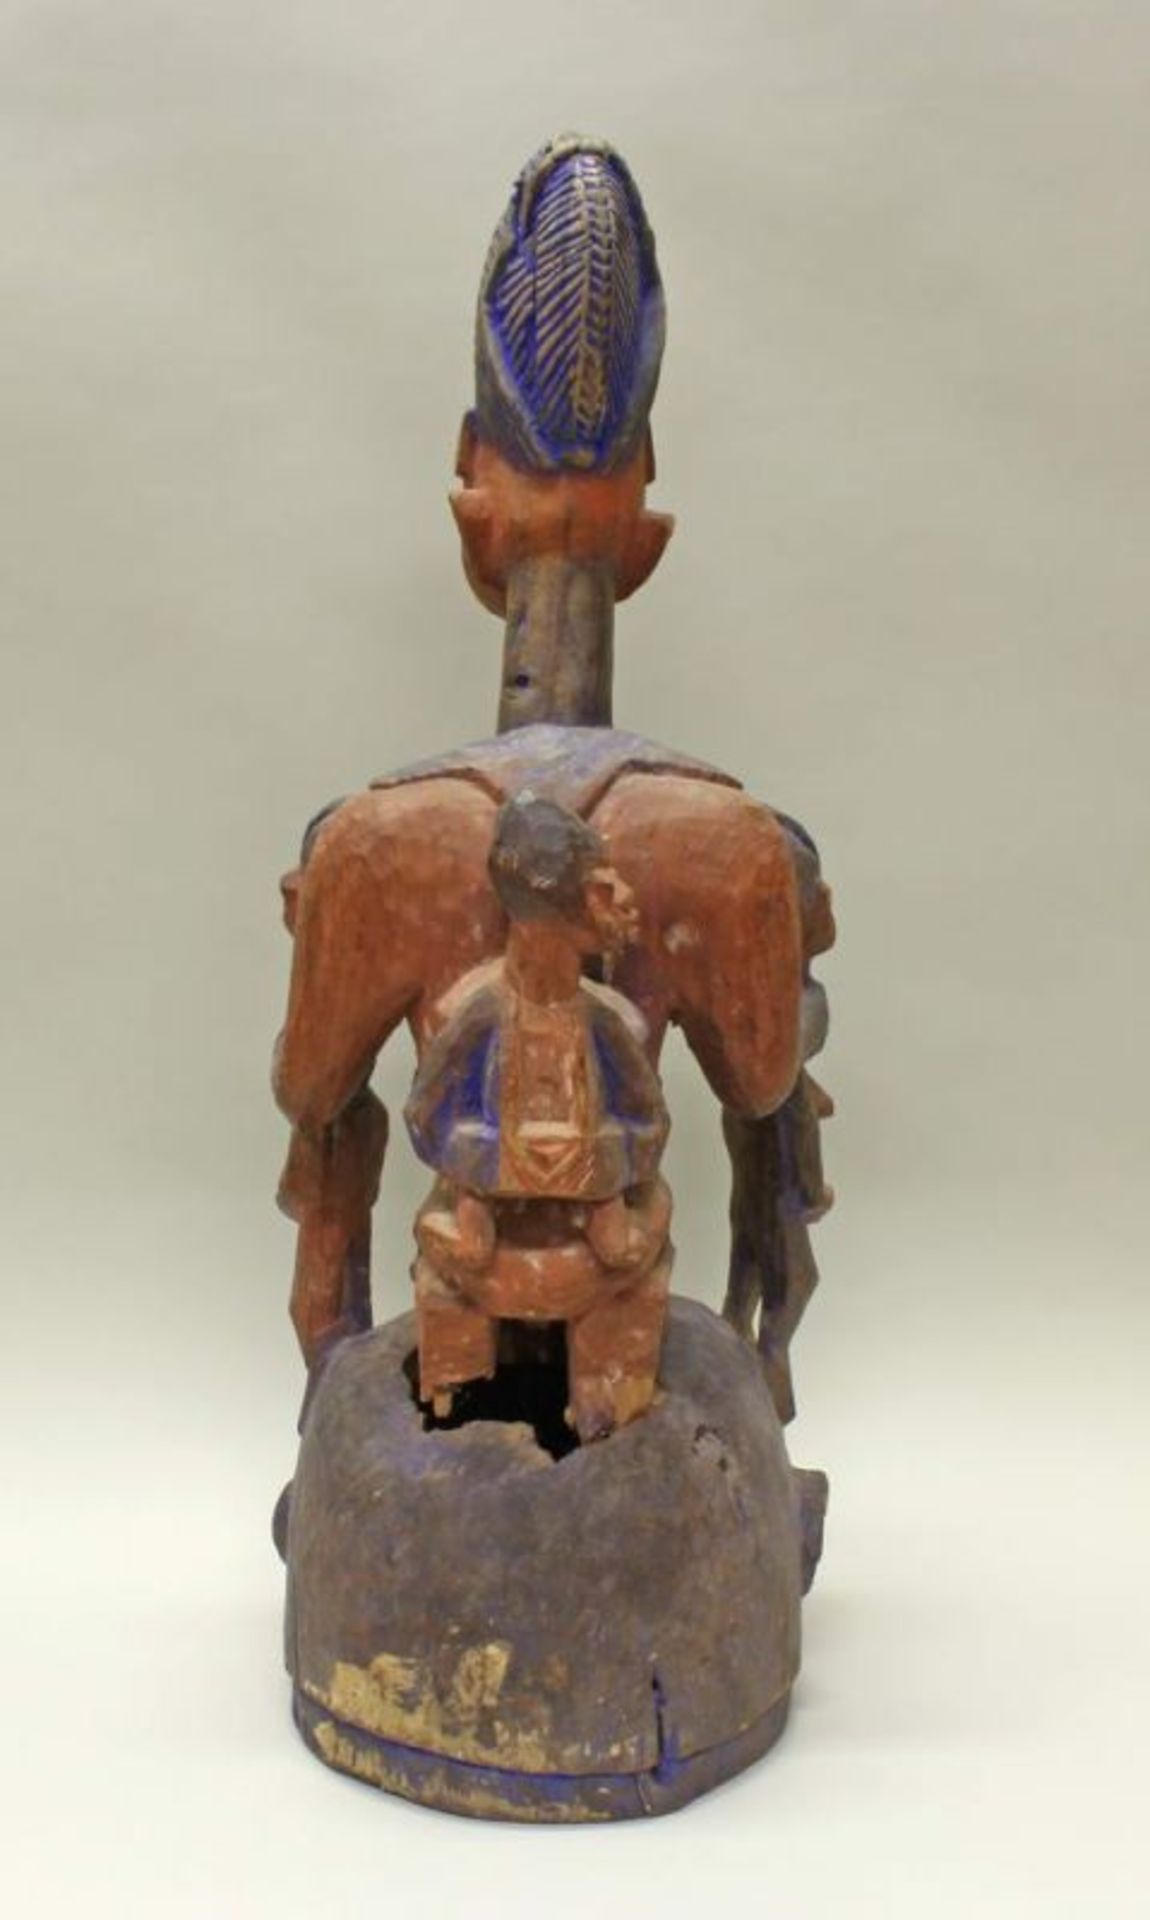 Aufsatzmaske, Joruba, Nigeria, Afrika, authentisch, Holz, teils rötliche bzw. violette Patina, 83 cm - Image 3 of 5